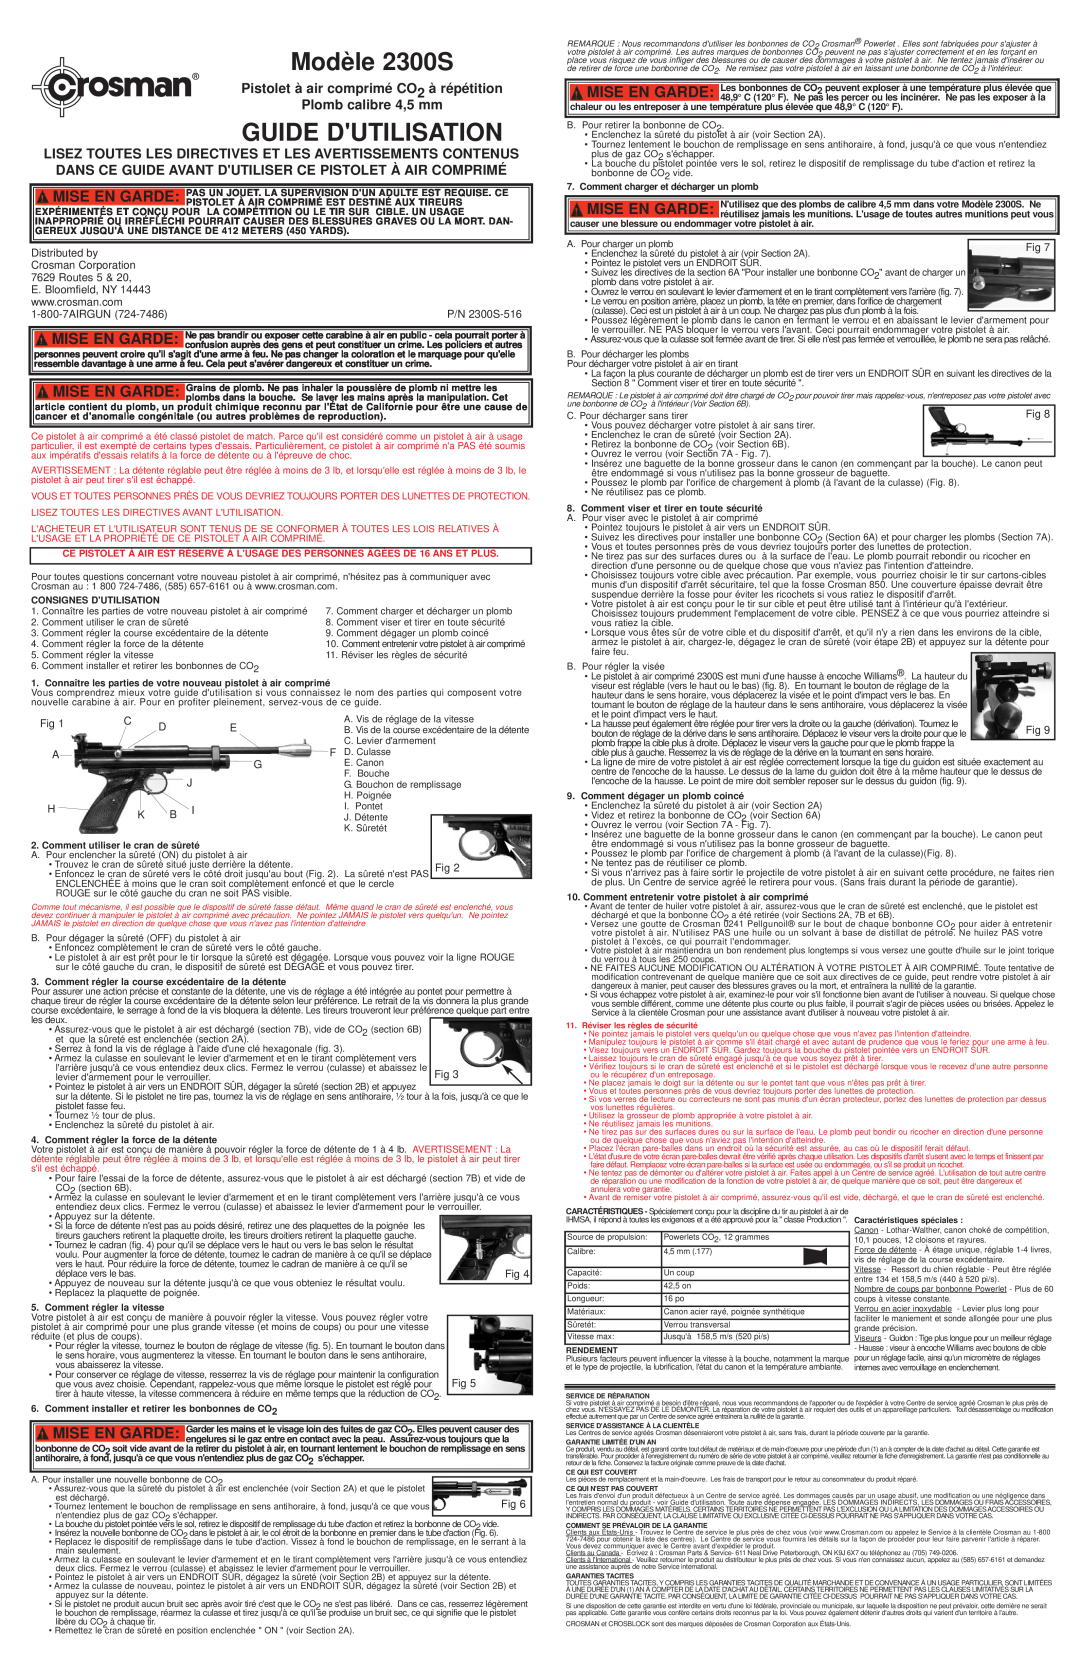 Hoover owner manual Modèle 2300S, Guide Dutilisation, Pistolet à air comprimé CO2 à répétition Plomb calibre 4,5 mm 